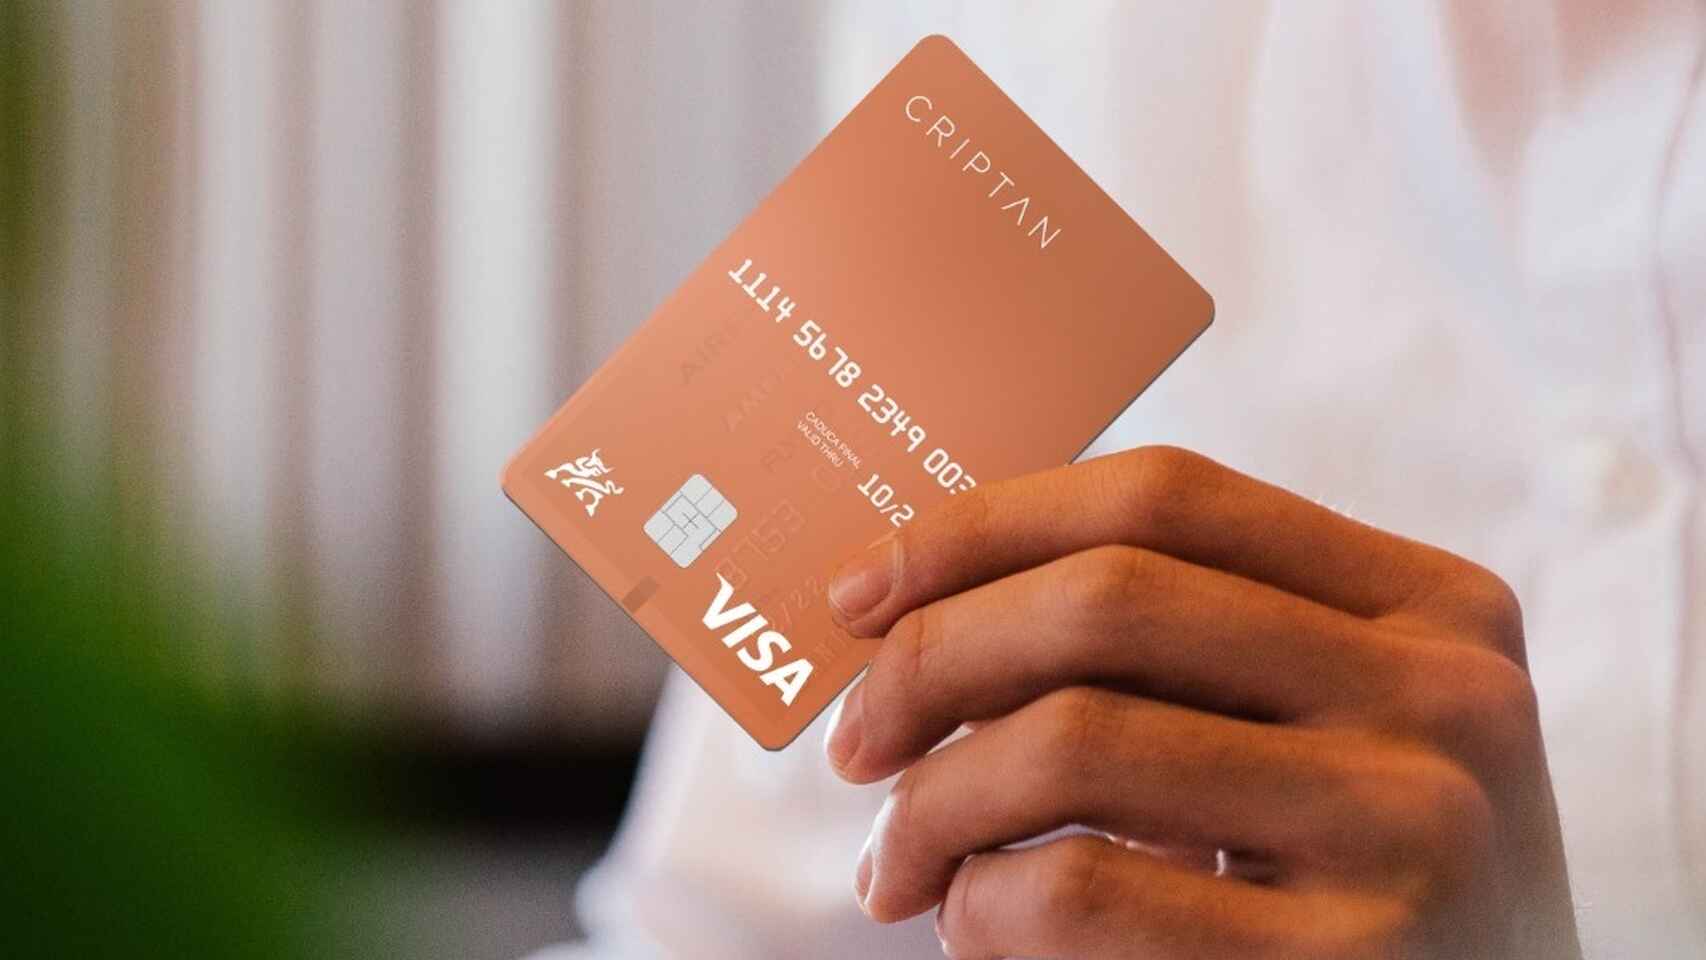 La plataforma de compra y venta cripto centrada en el mercado español acaba de poner a disposición de los clientes su primera tarjeta física Visa